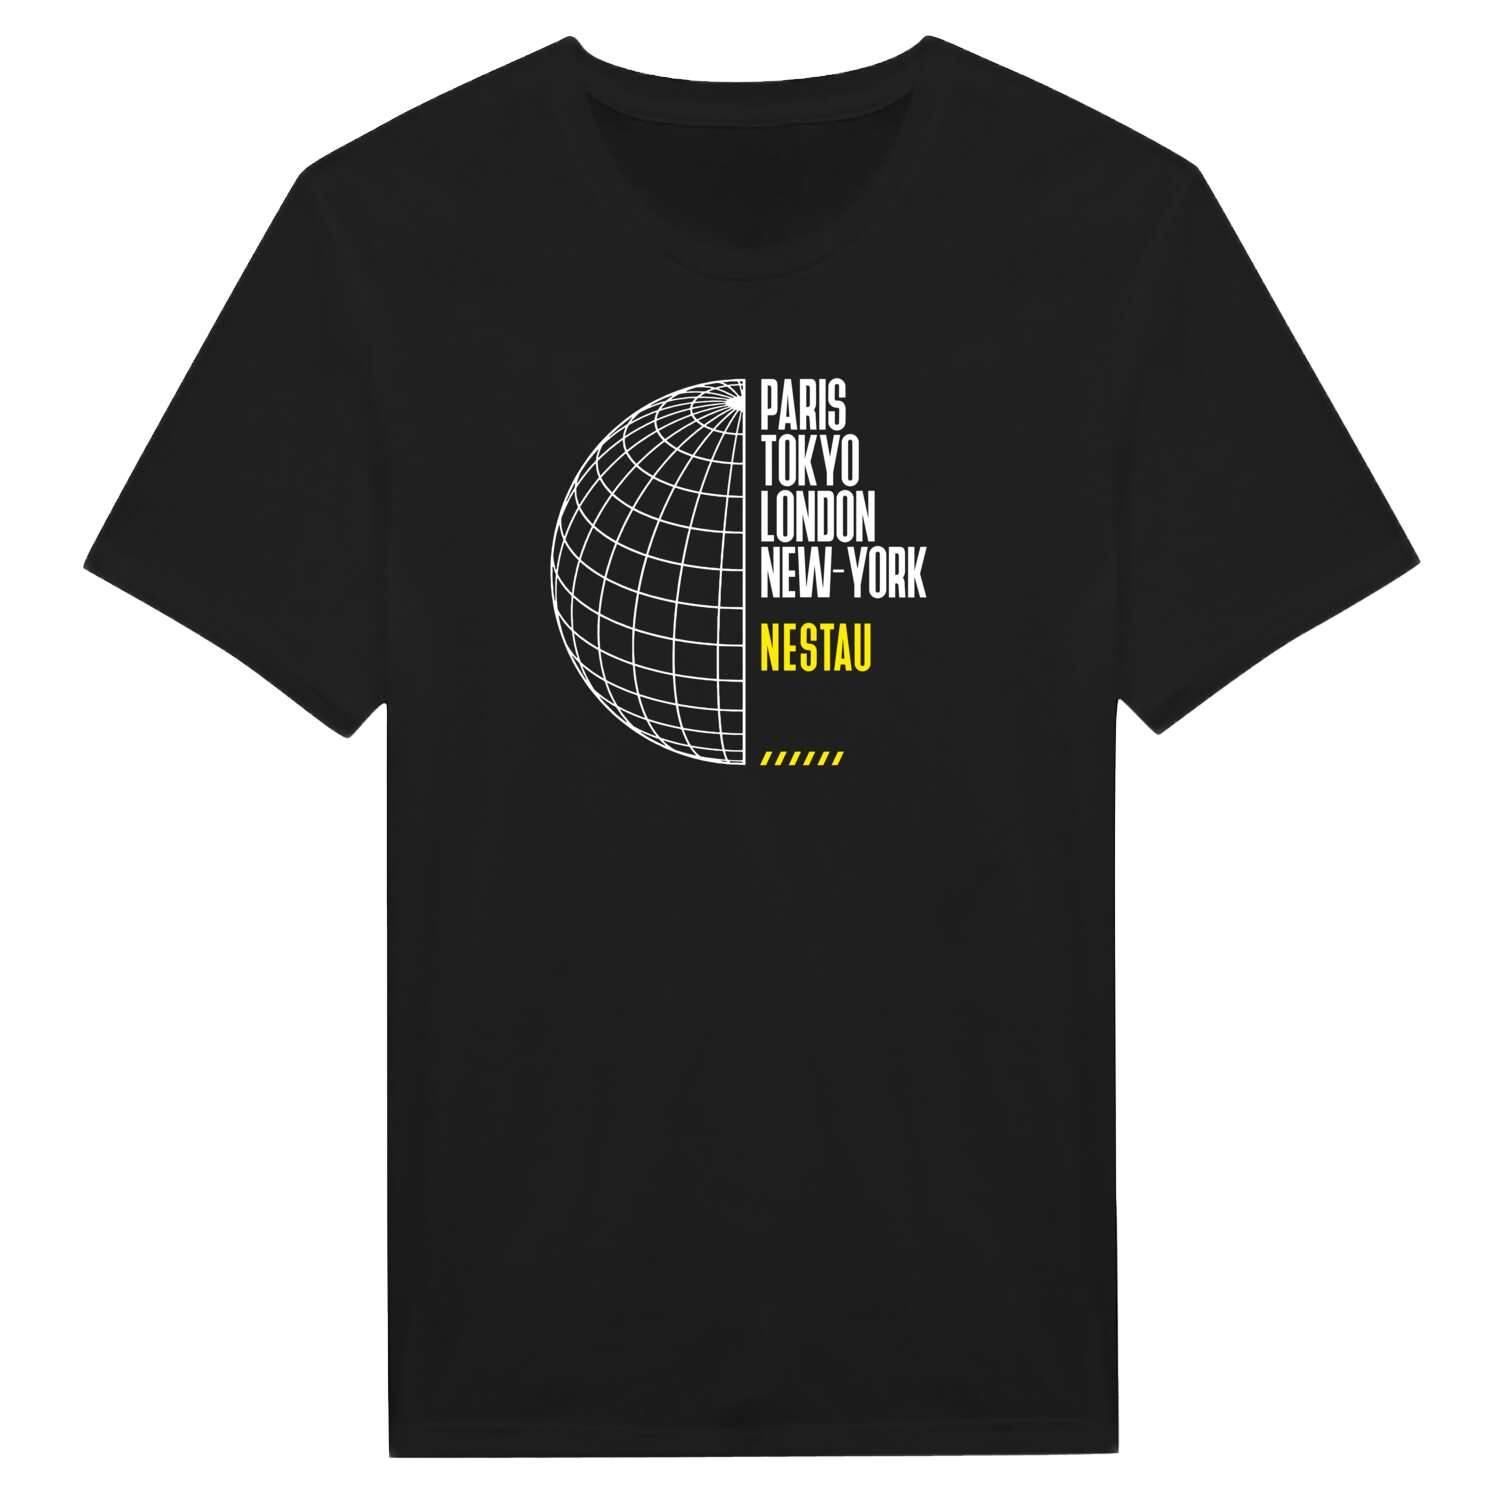 Nestau T-Shirt »Paris Tokyo London«